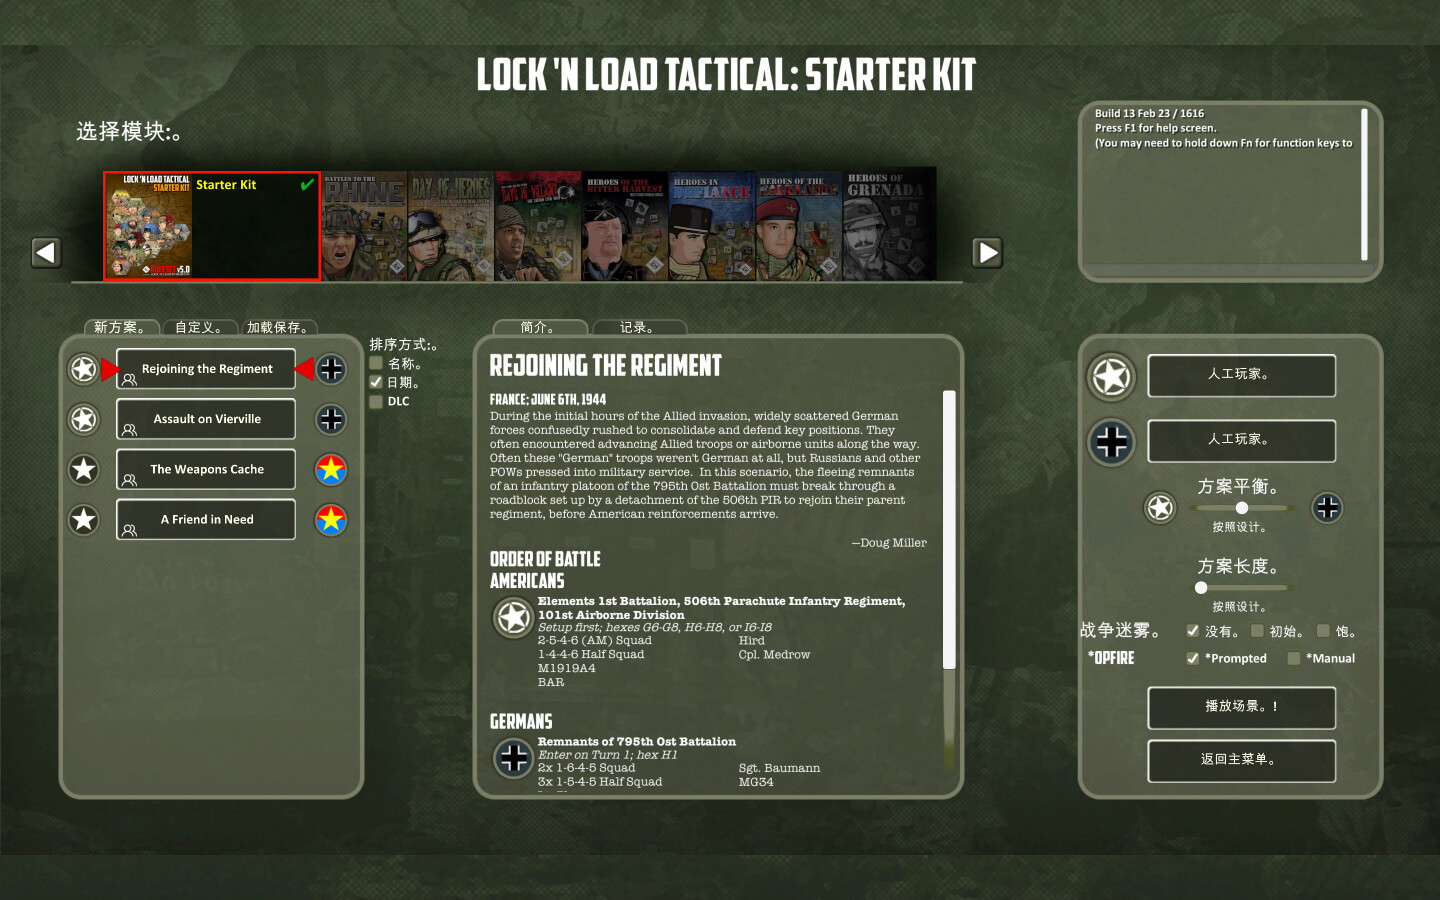 锁定负载战术 for Mac v0.81(26 Feb 23) Lock ‘n Load Tactical Digital: Core Game 中文原生版下载-您赛